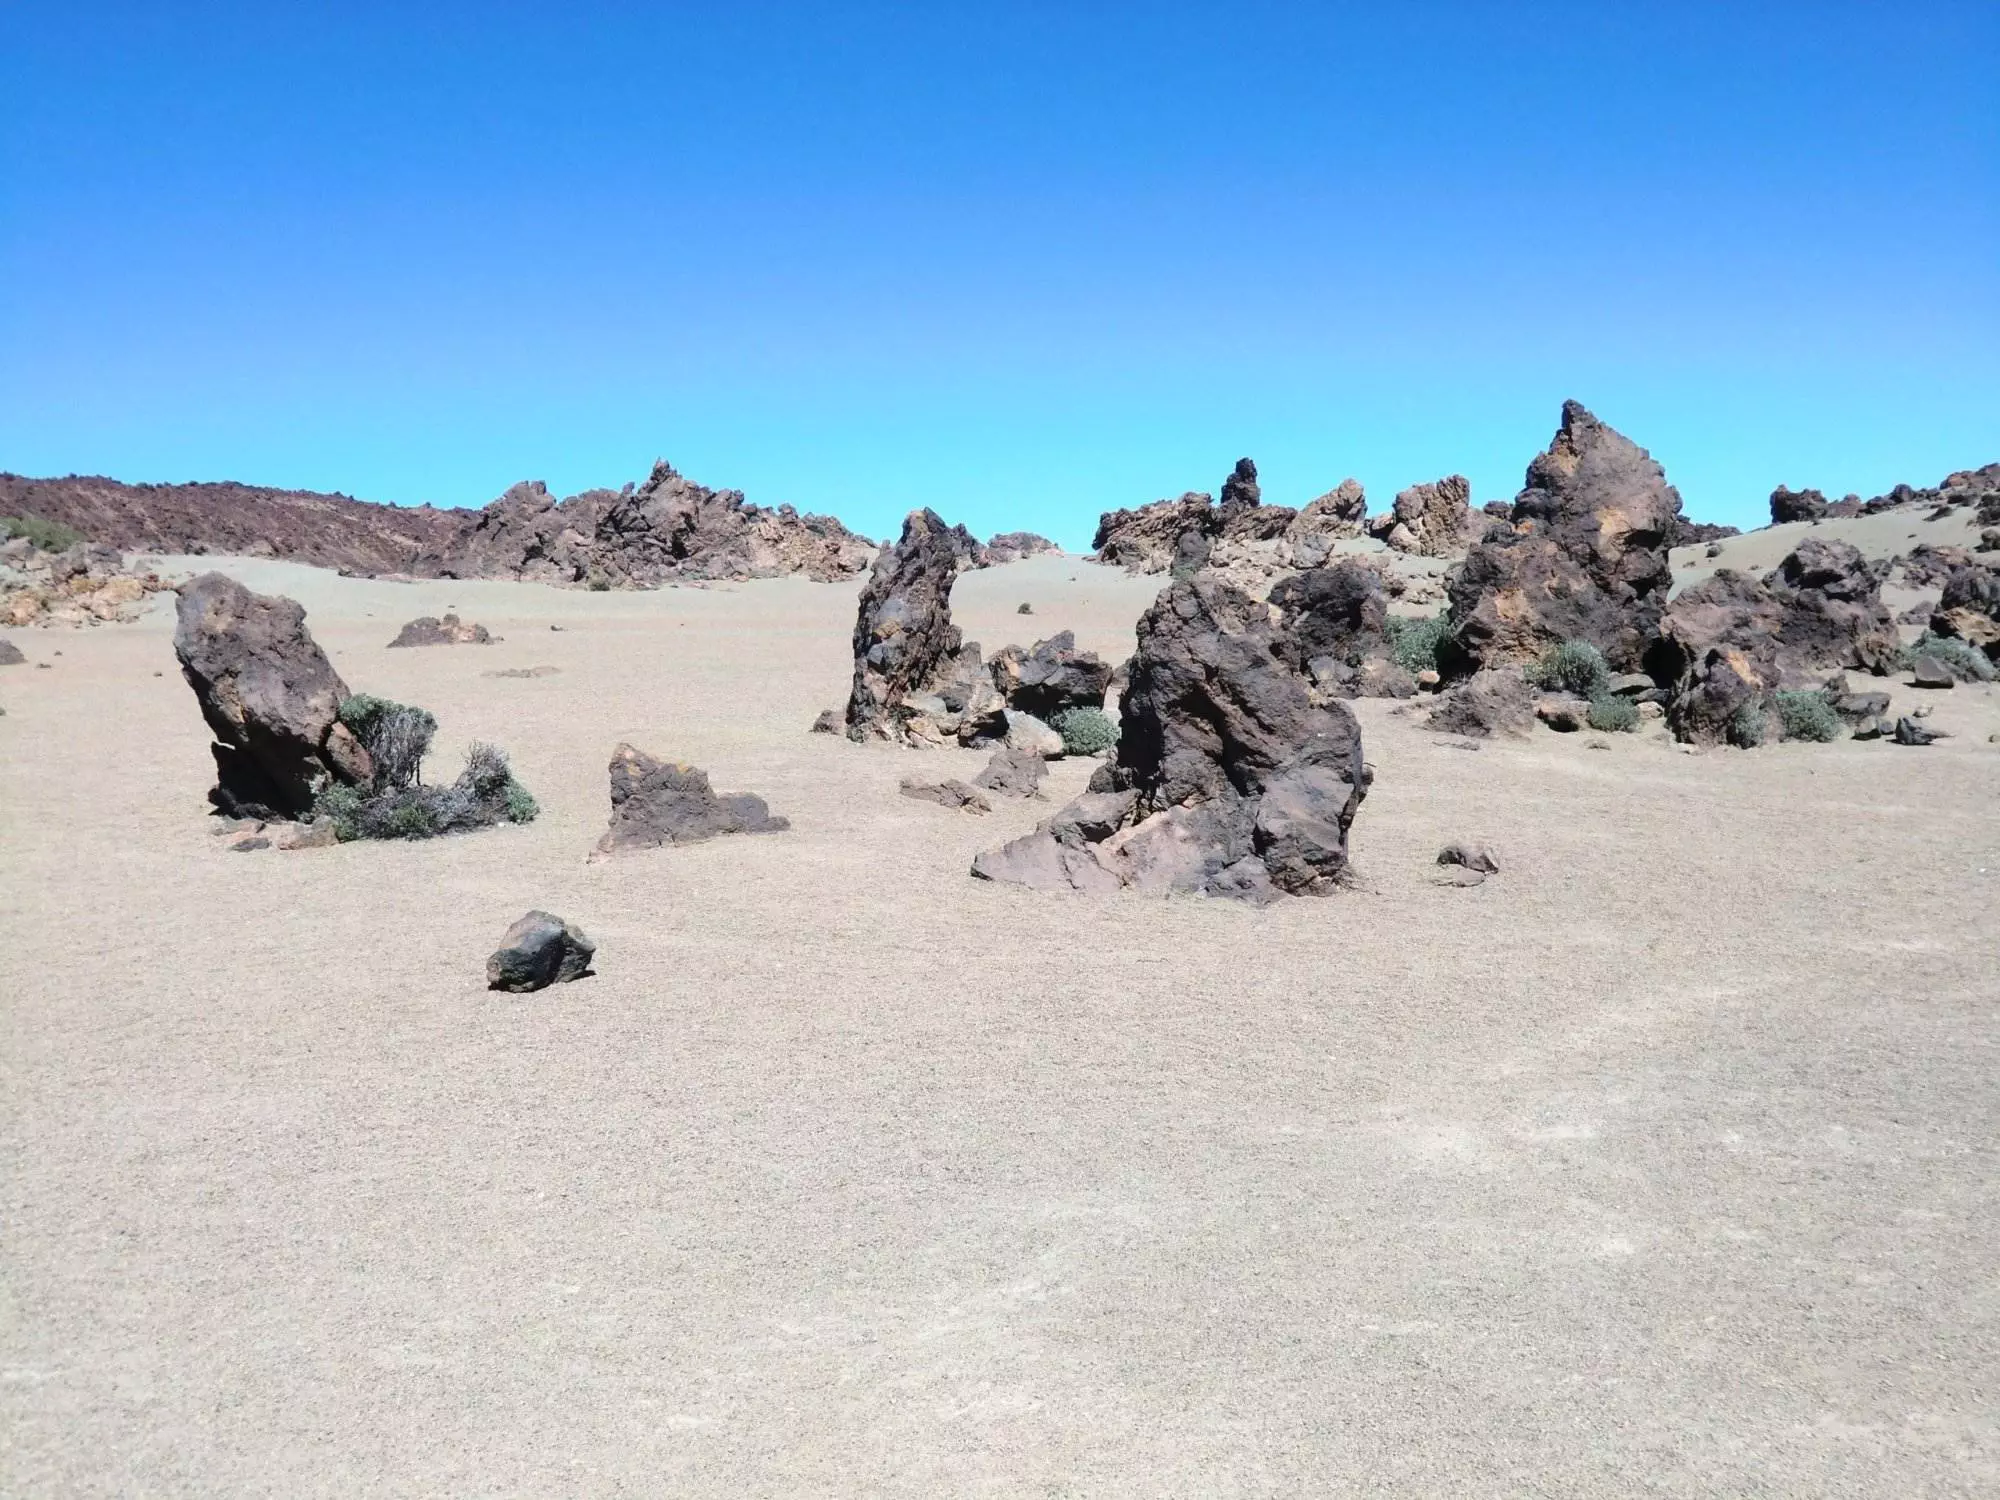 Felsformationen in einer Wüste mit blauem Himmel beim Erkunden von Teneriffa.